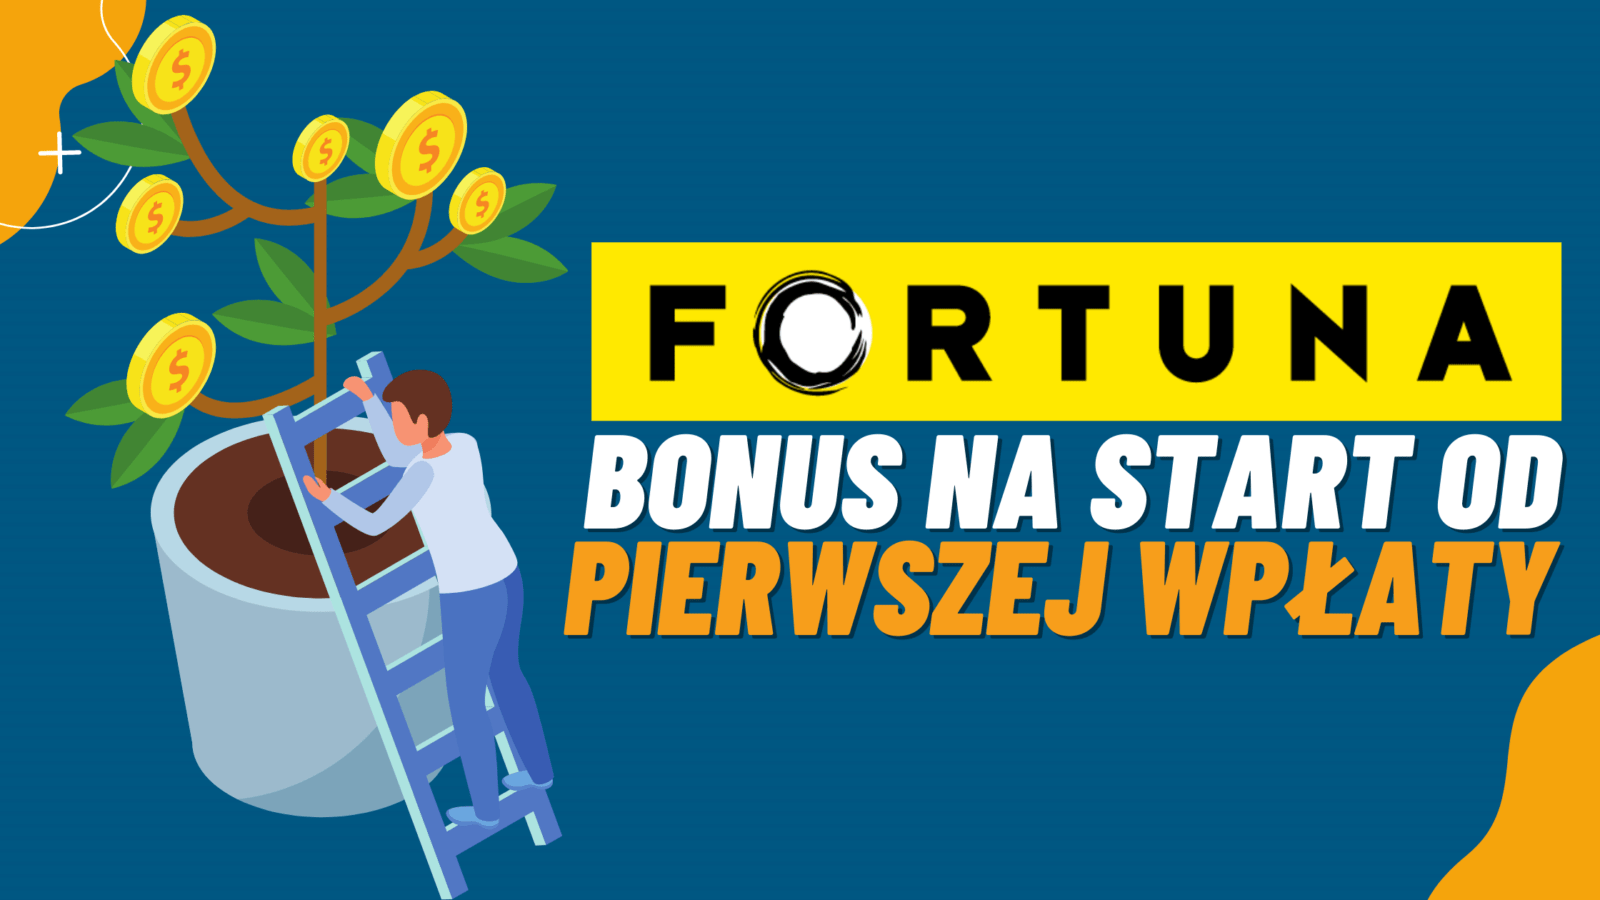 Legalny bukmacher Fortuna bonus na start od pierwszej wpłaty